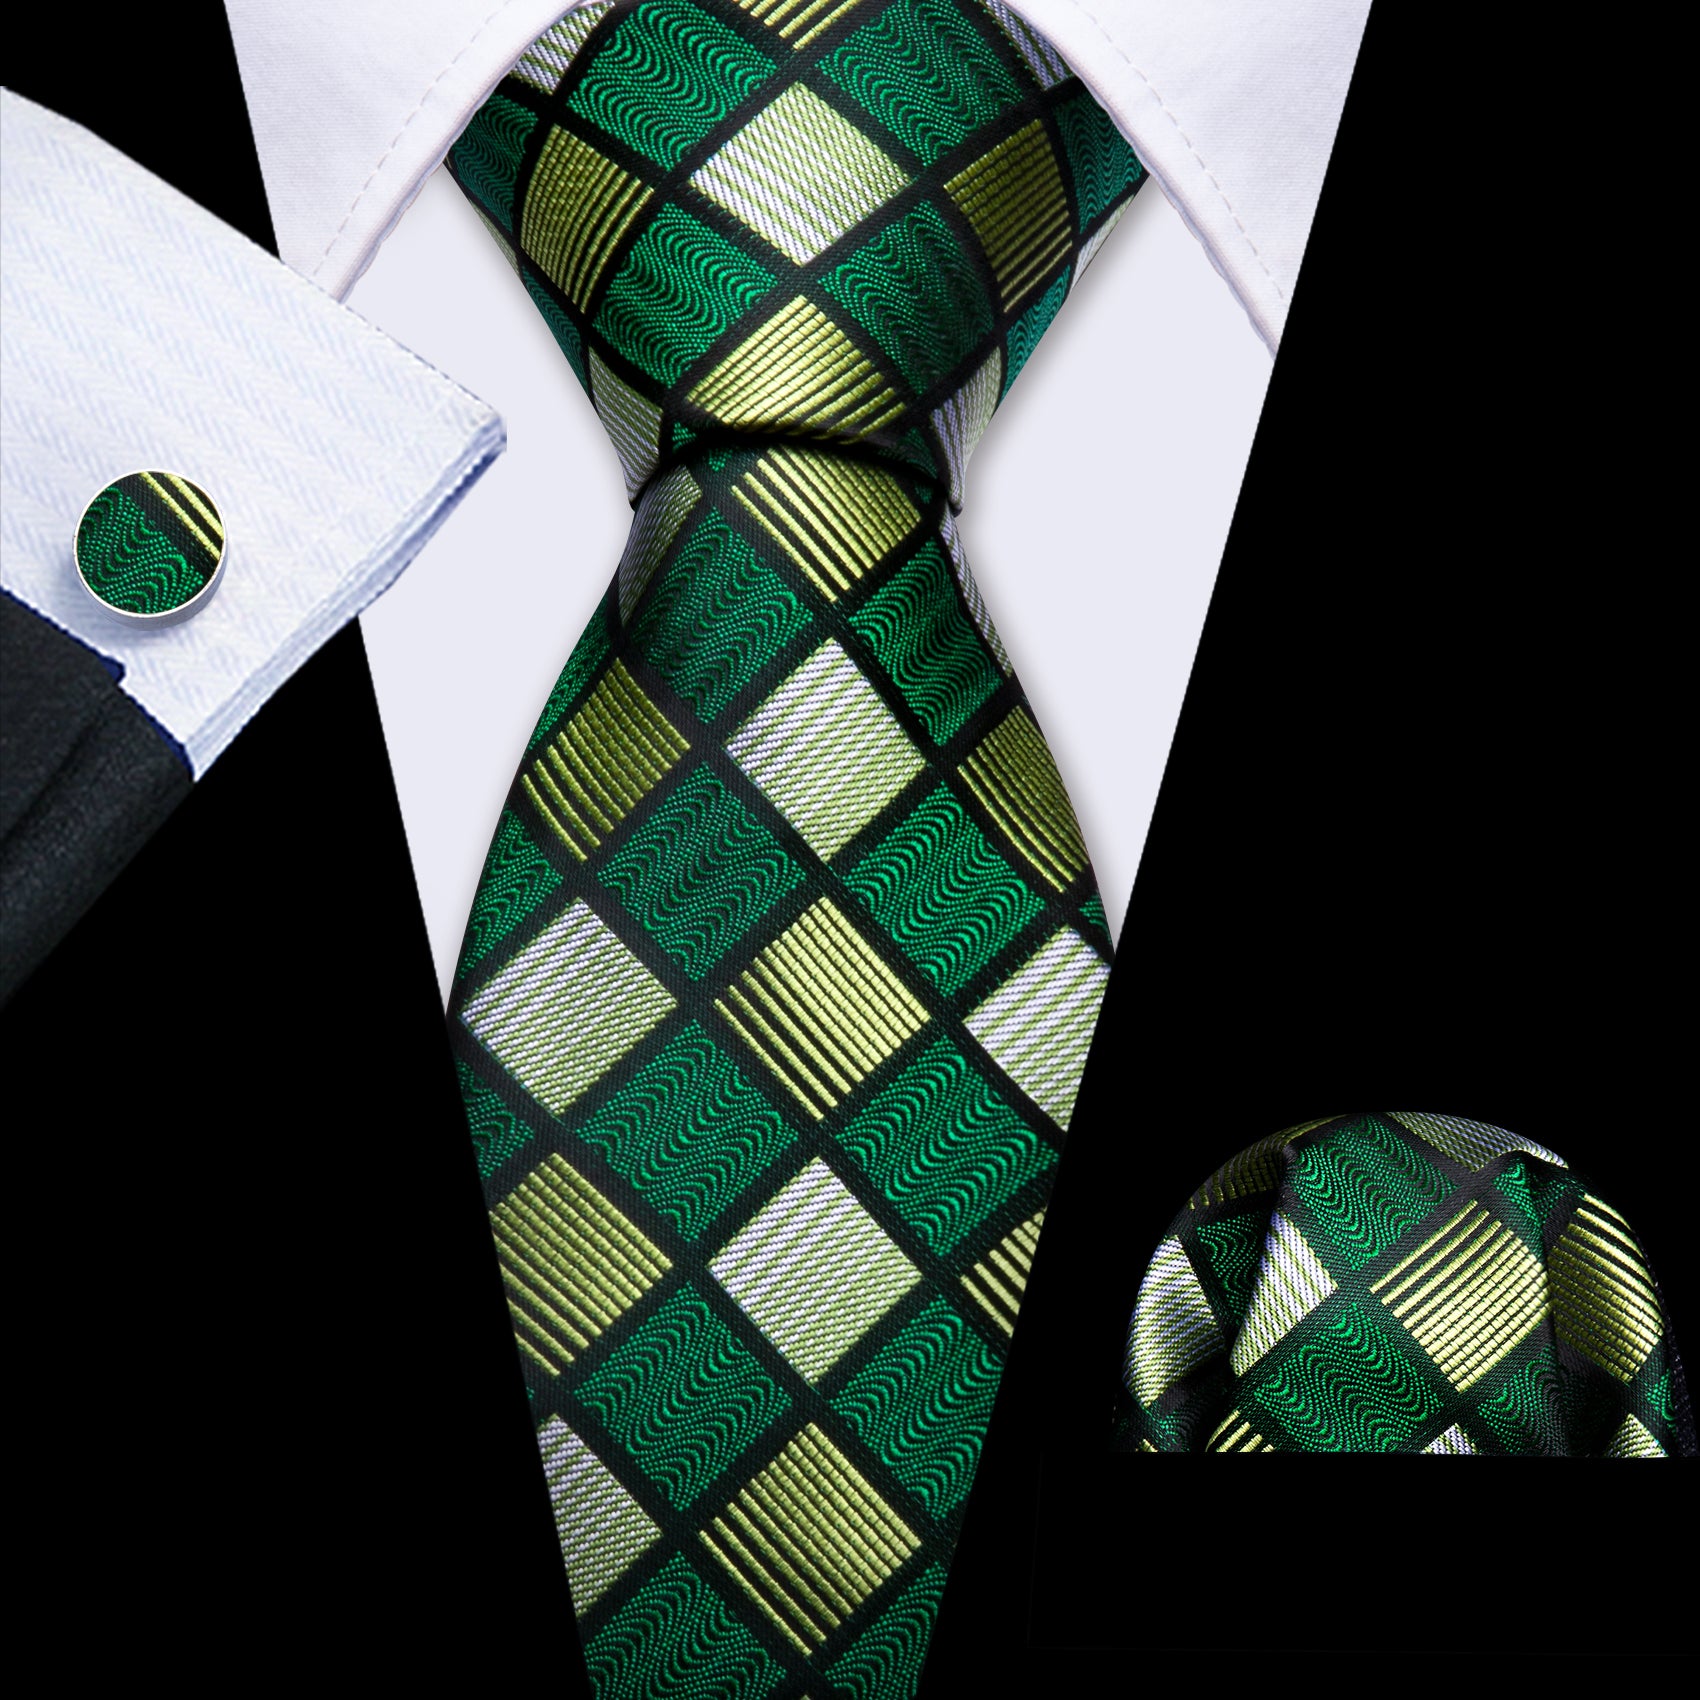 Barry Wang Green Plaid Silk Tie Handkerchief Cufflinks Set